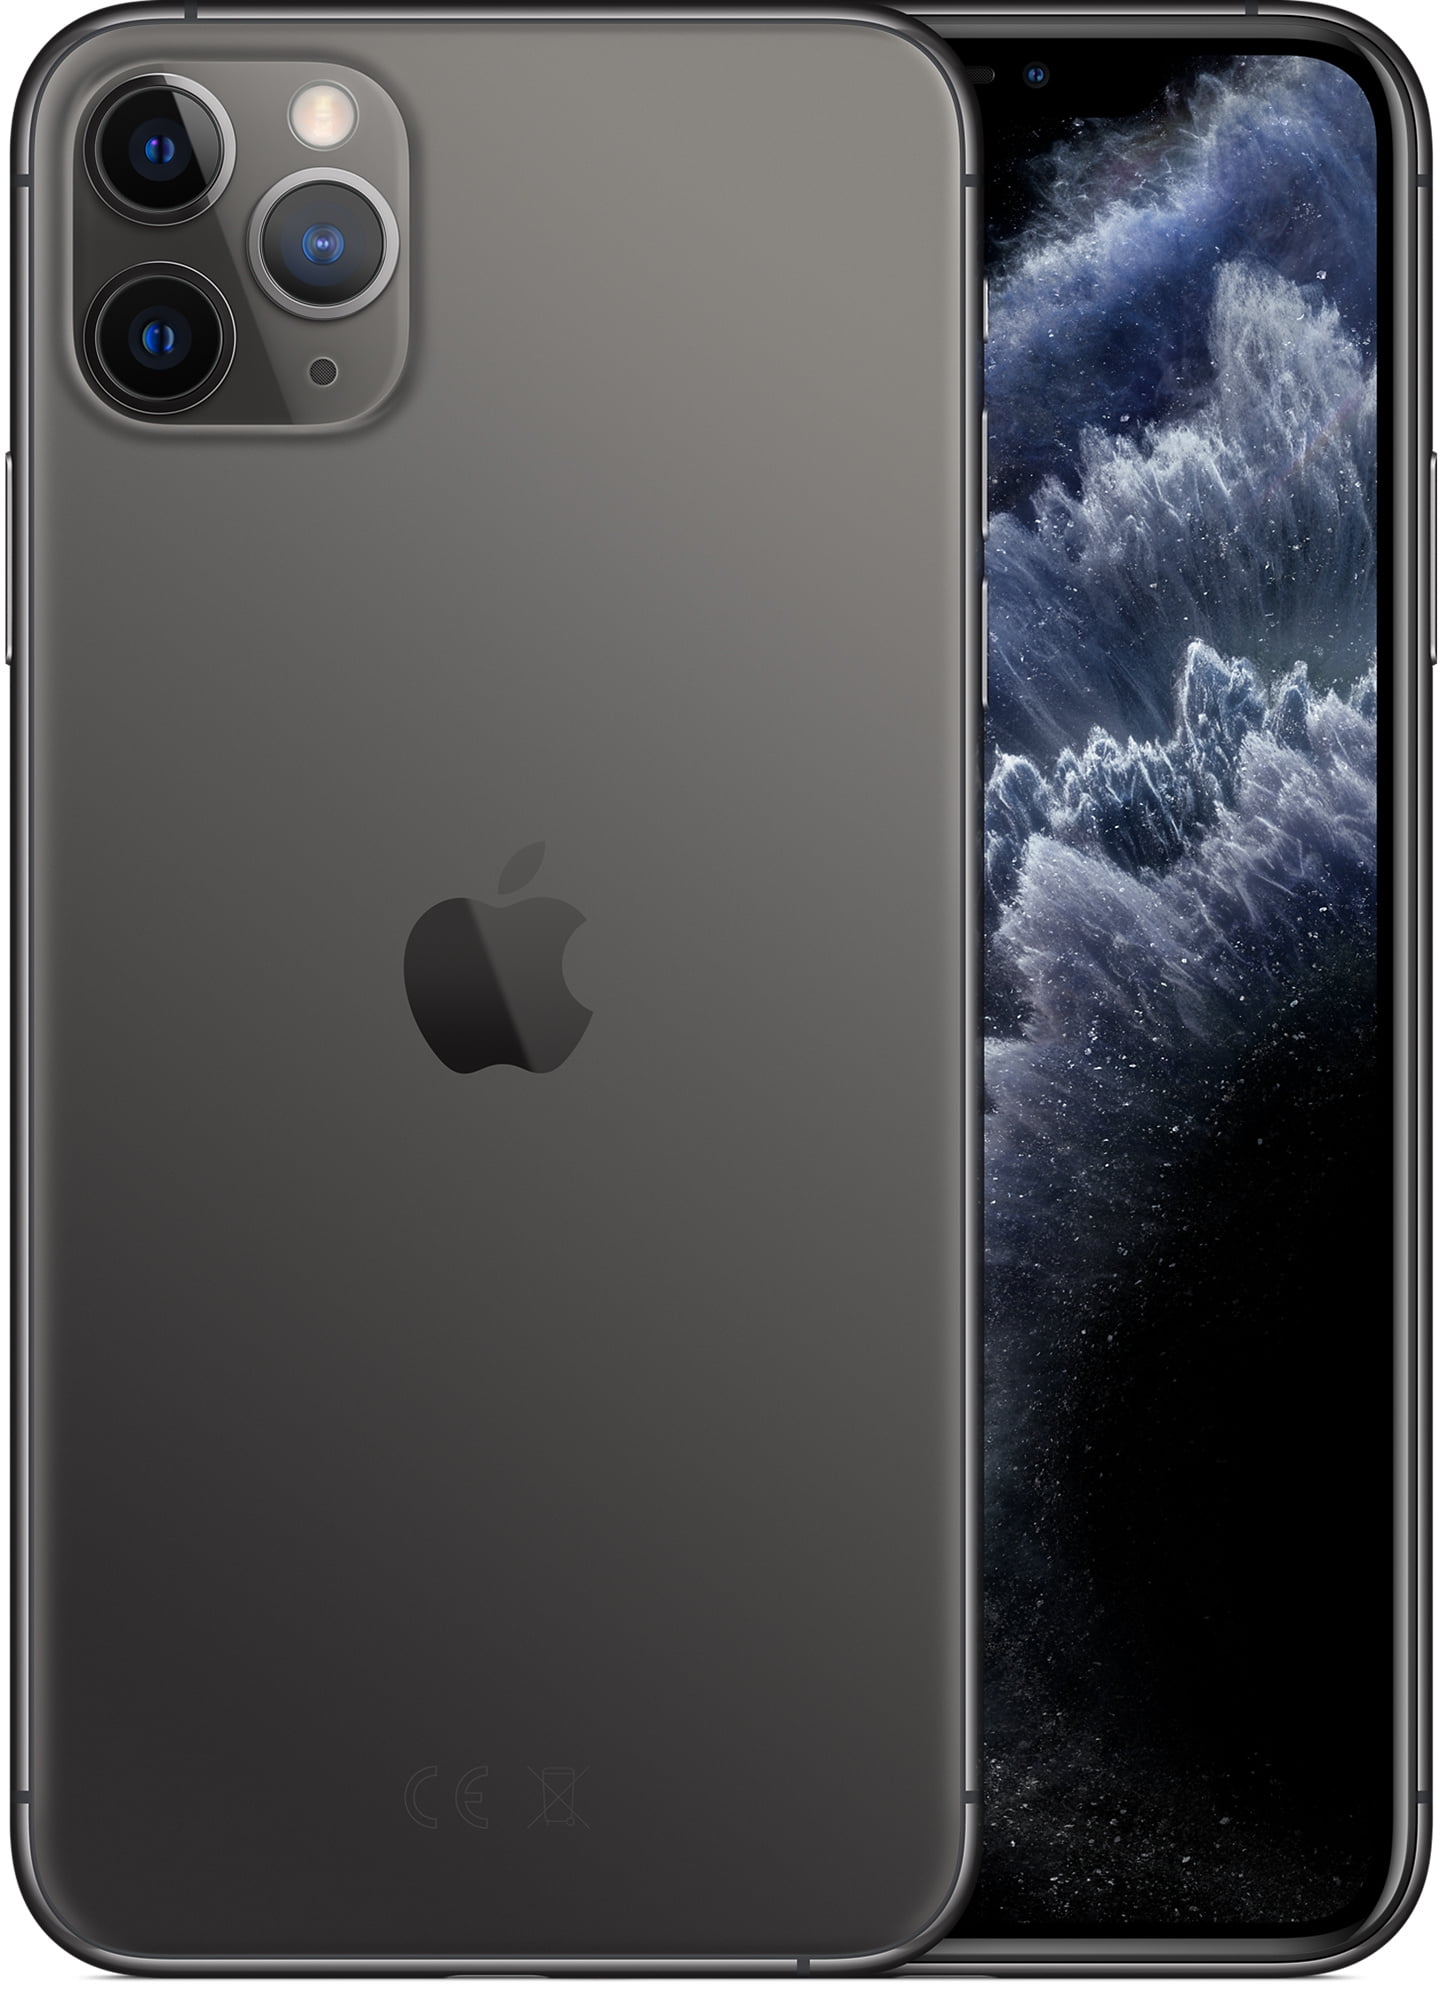 iPhone 11 Pro Max スペースグレイ 256GB-